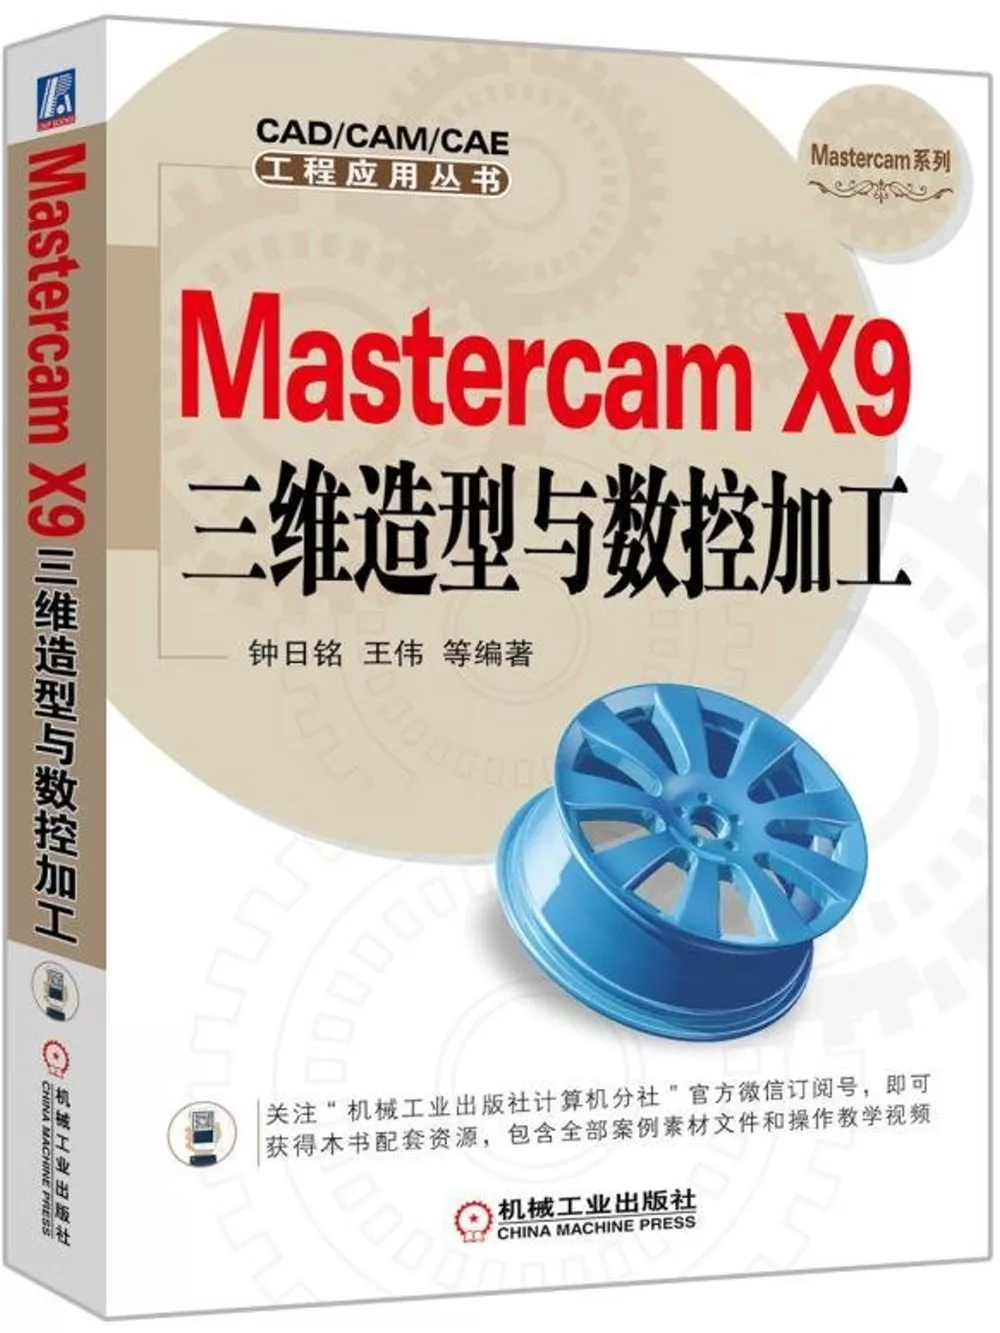 mastercam x9 book